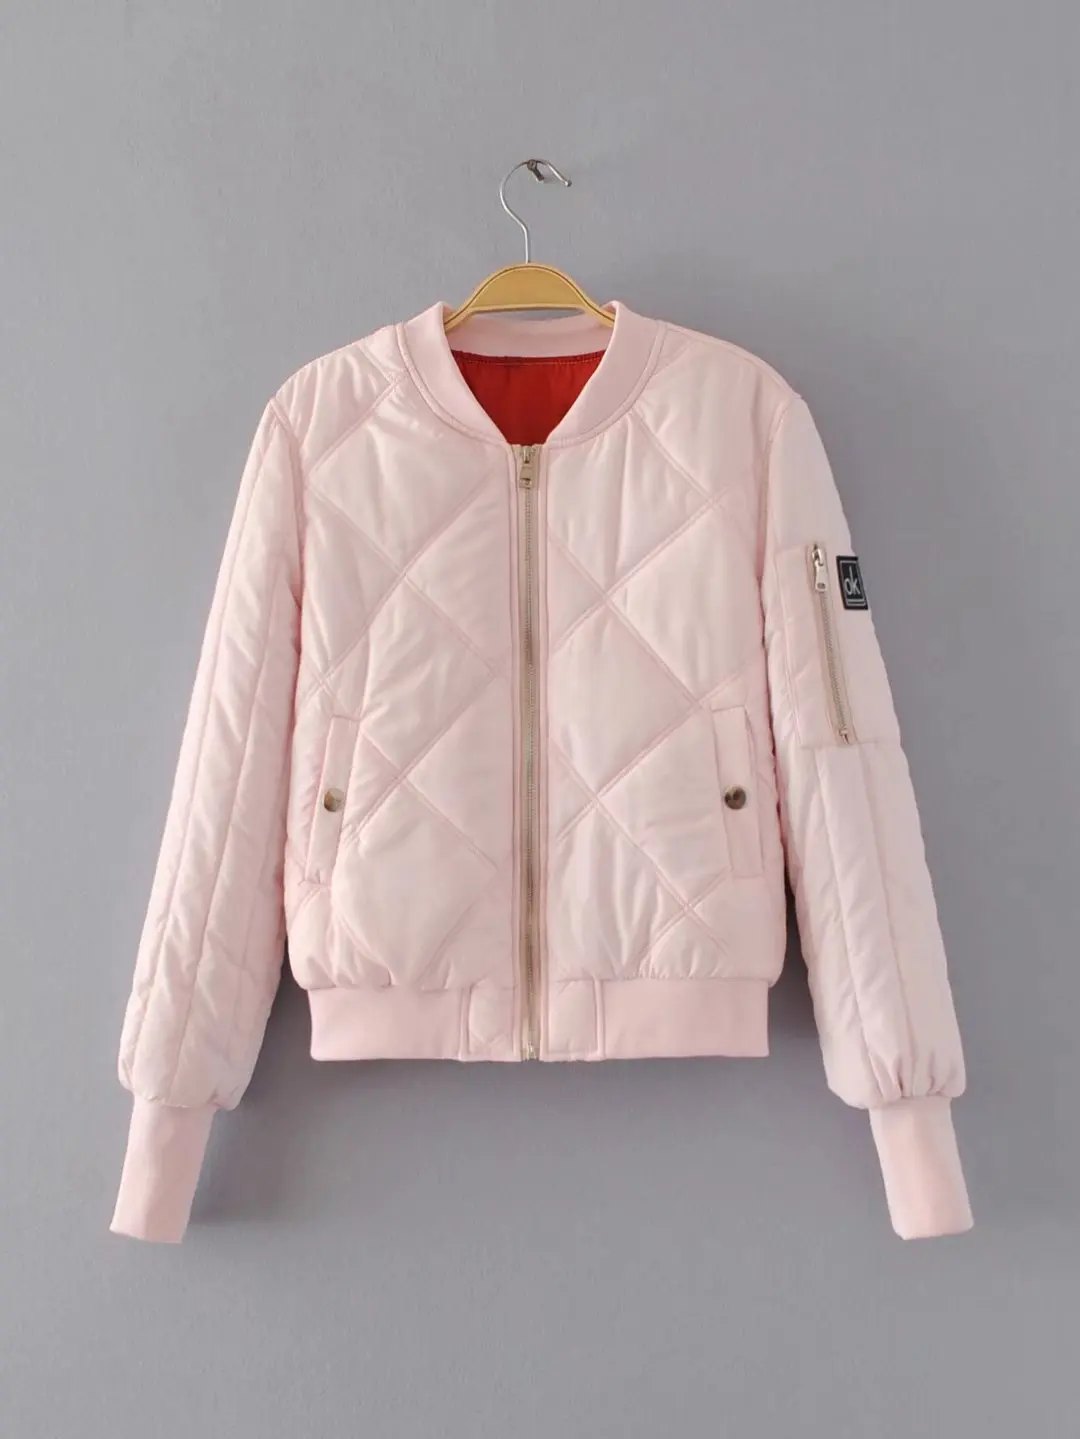 Aelegantmis для женщин основной курточка бомбер осень зима толстые теплые хлопковые пальто леди бейсбол куртки верхняя одежда повседневное уличная - Цвет: Розовый